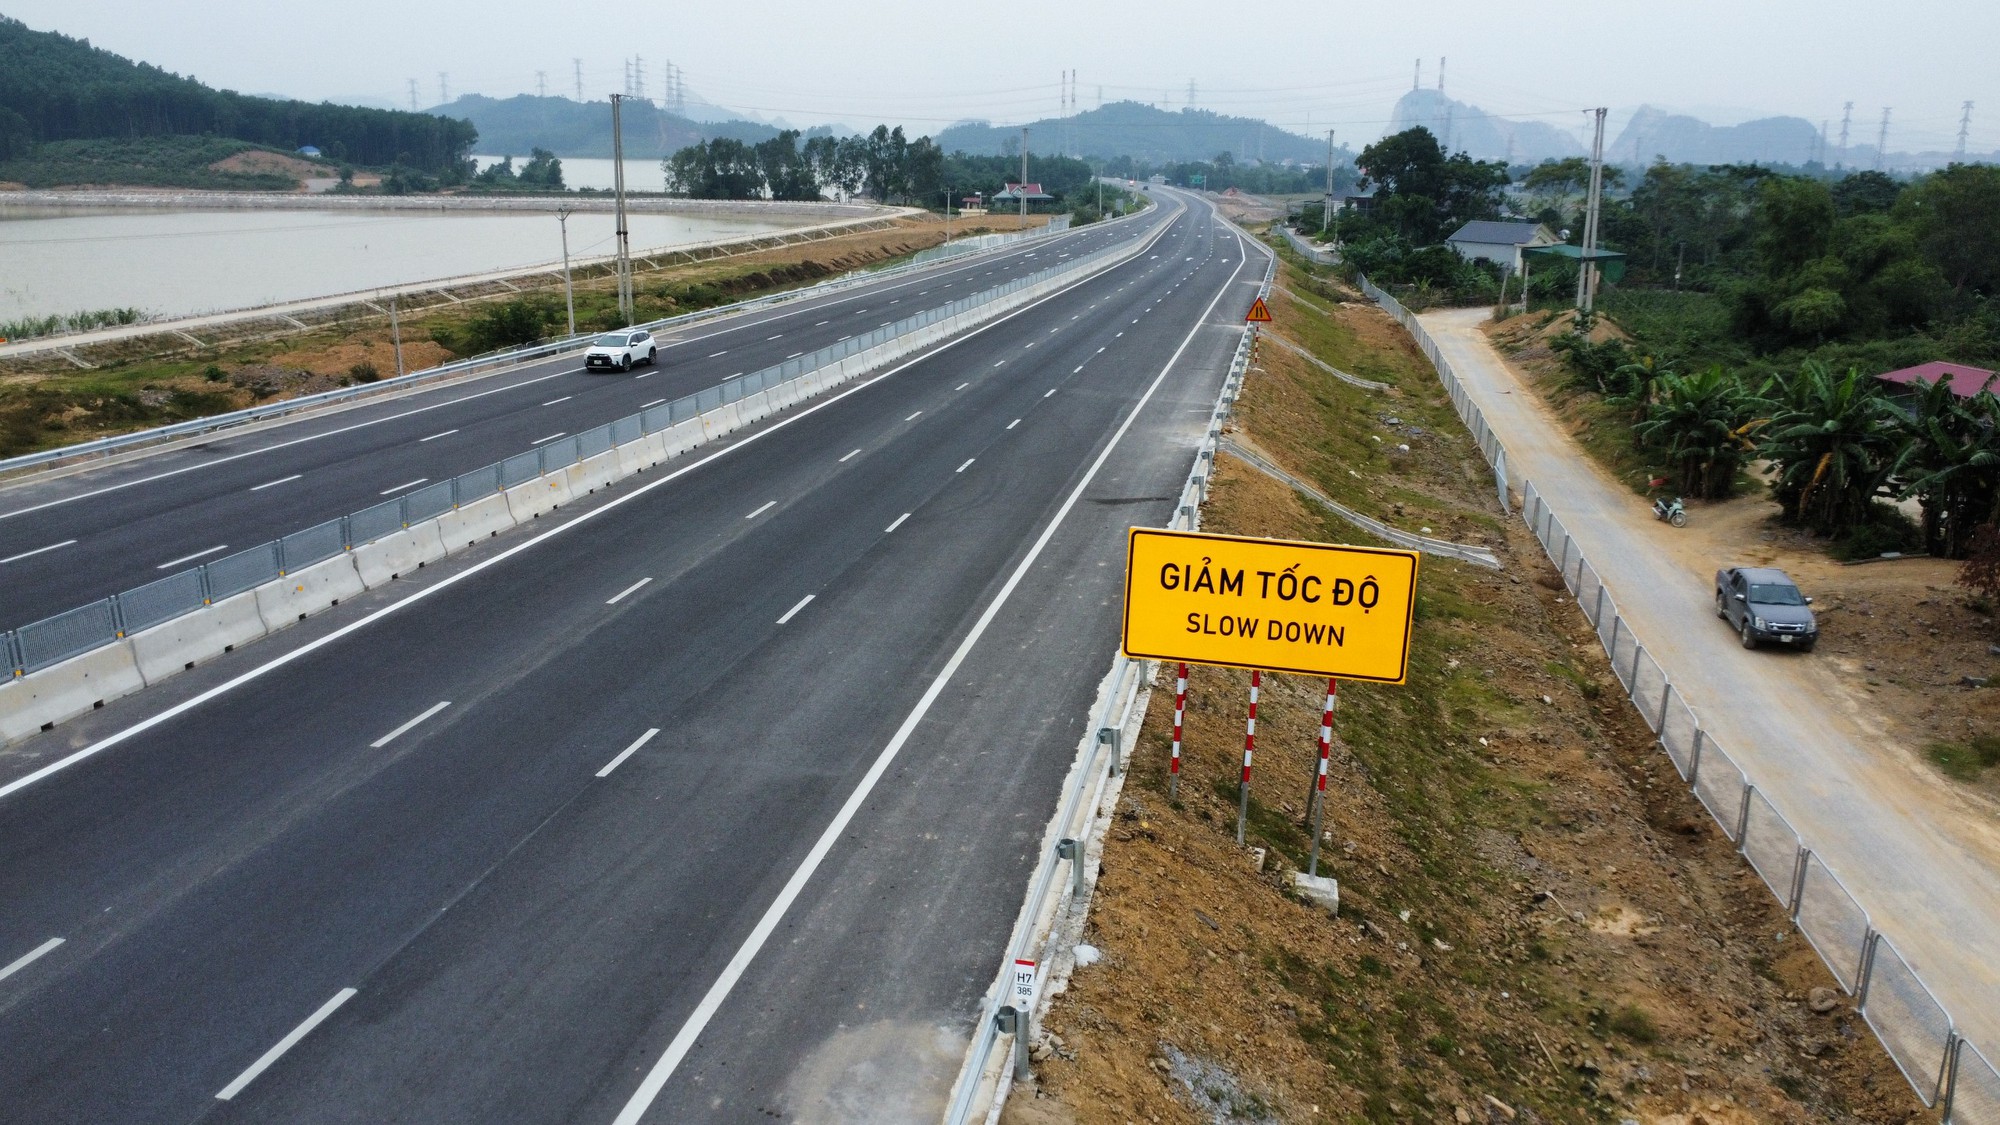 Tập đoàn Xây dựng giao thông Trung Quốc ngỏ ý muốn tham gia xây dựng đường cao tốc Bắc - Nam - Ảnh 2.